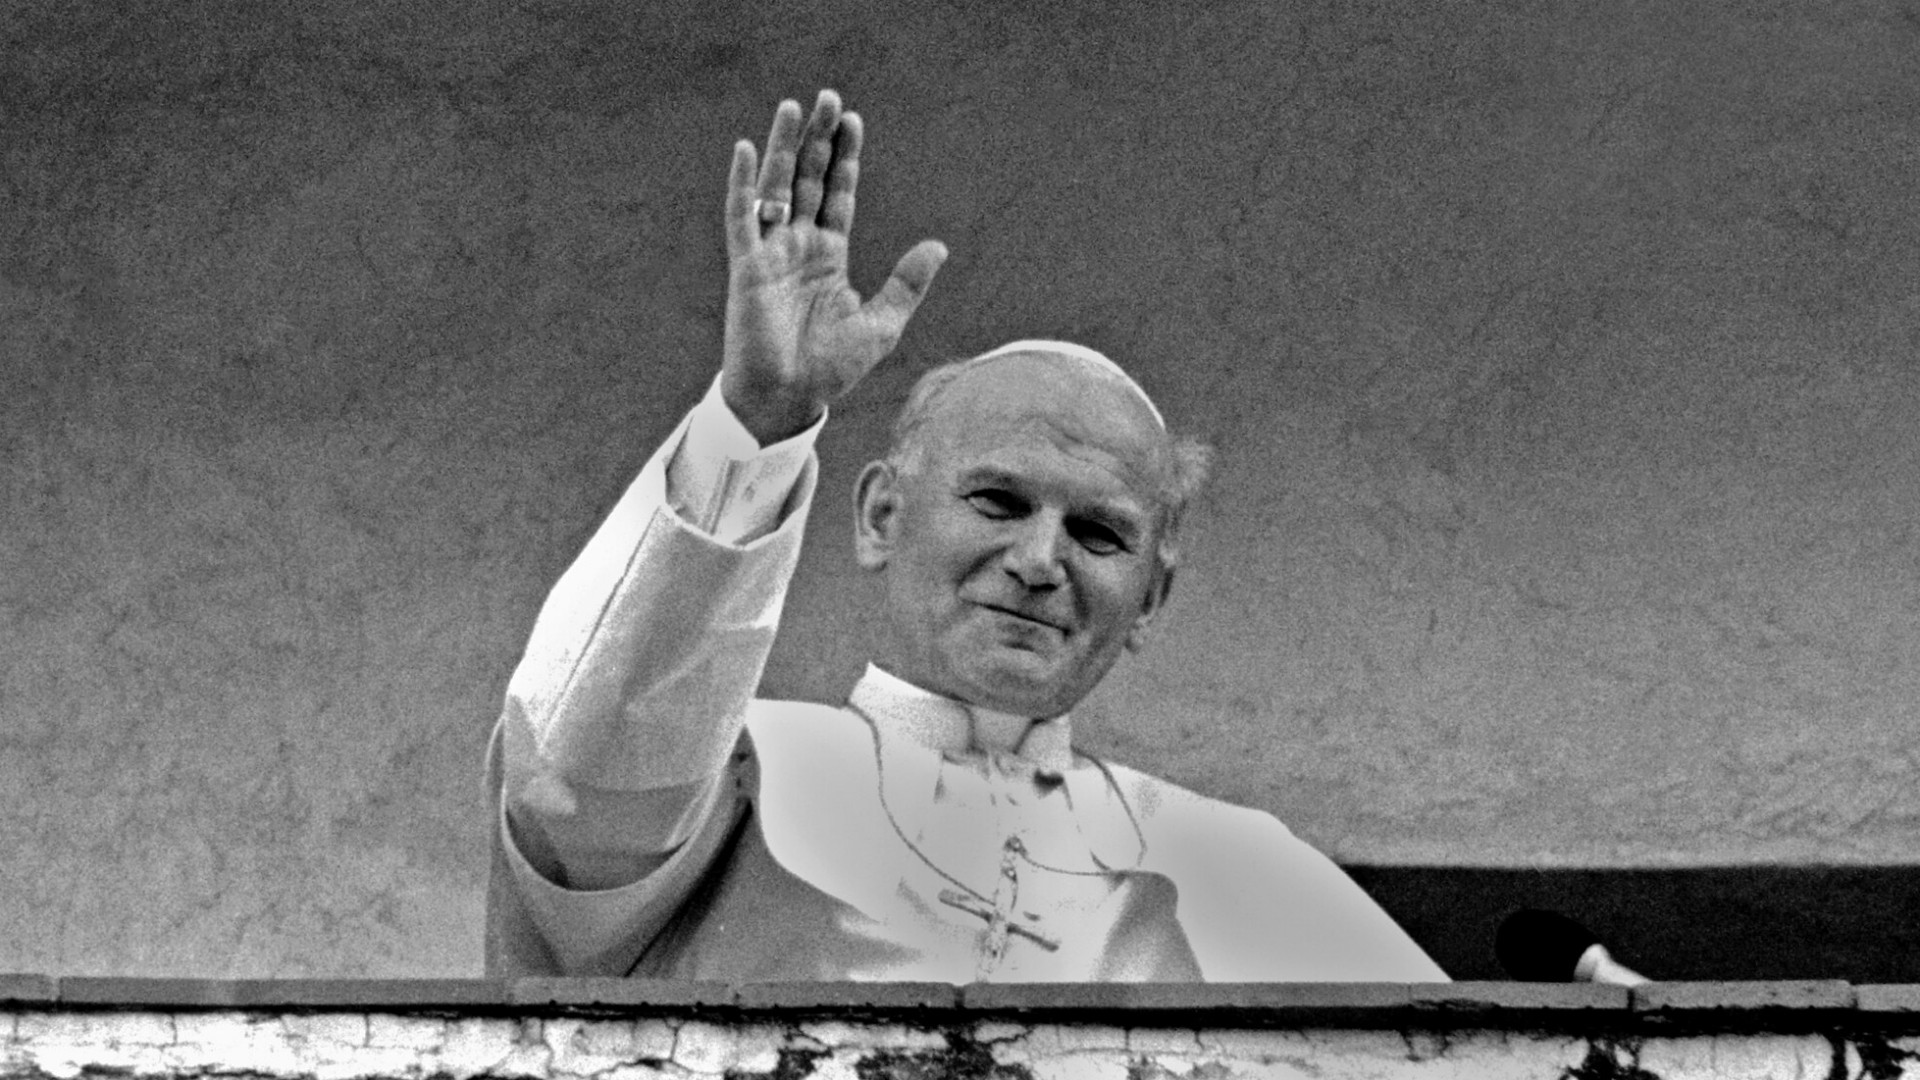 Le pape Jean-Paul 2 a été canonisé le 27 avril 2014 | © Winston Vargas/Flickr/CC BY-NC 2.0